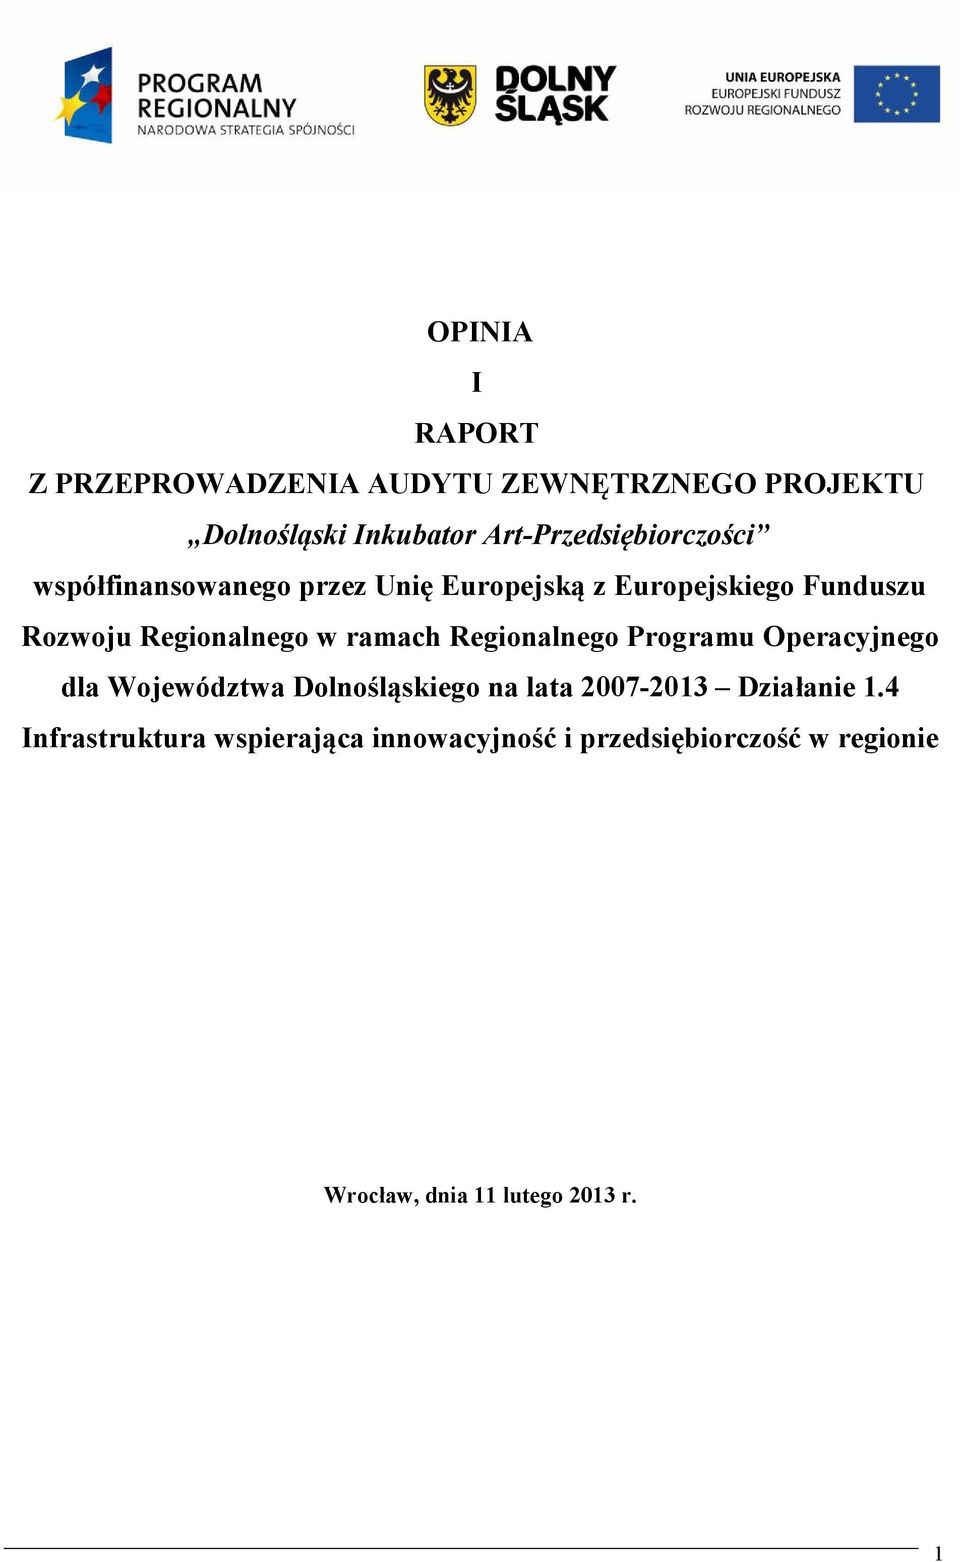 Regionalnego w ramach Regionalnego Programu Operacyjnego dla Województwa Dolnośląskiego na lata